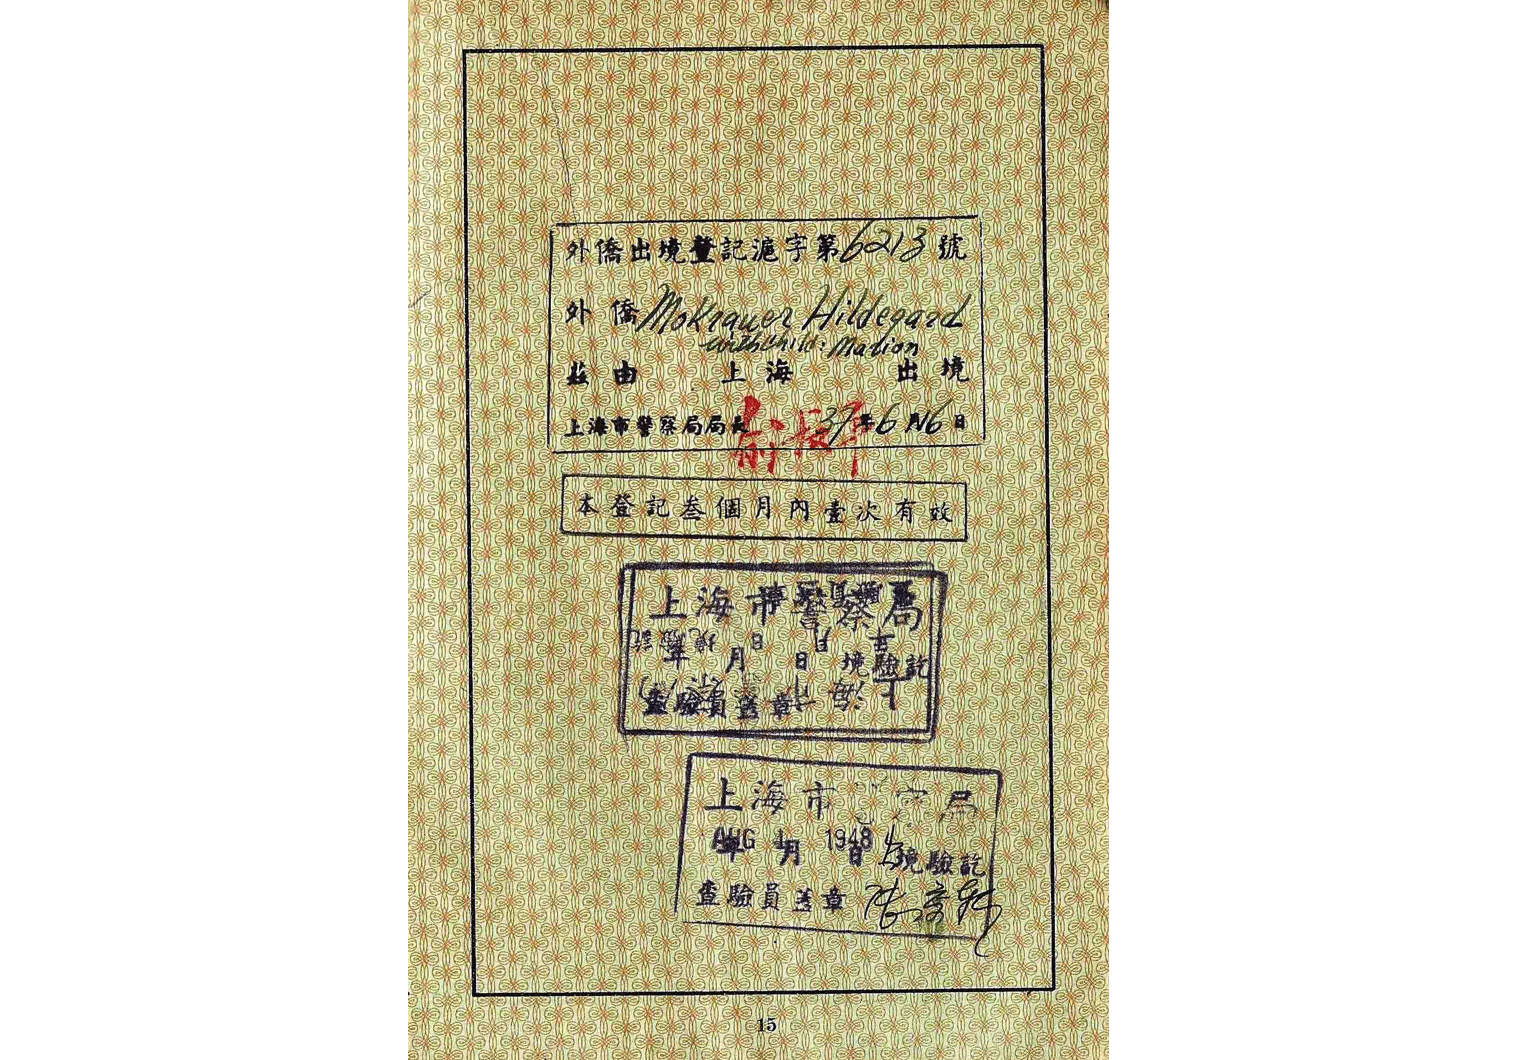 WW2 China passport